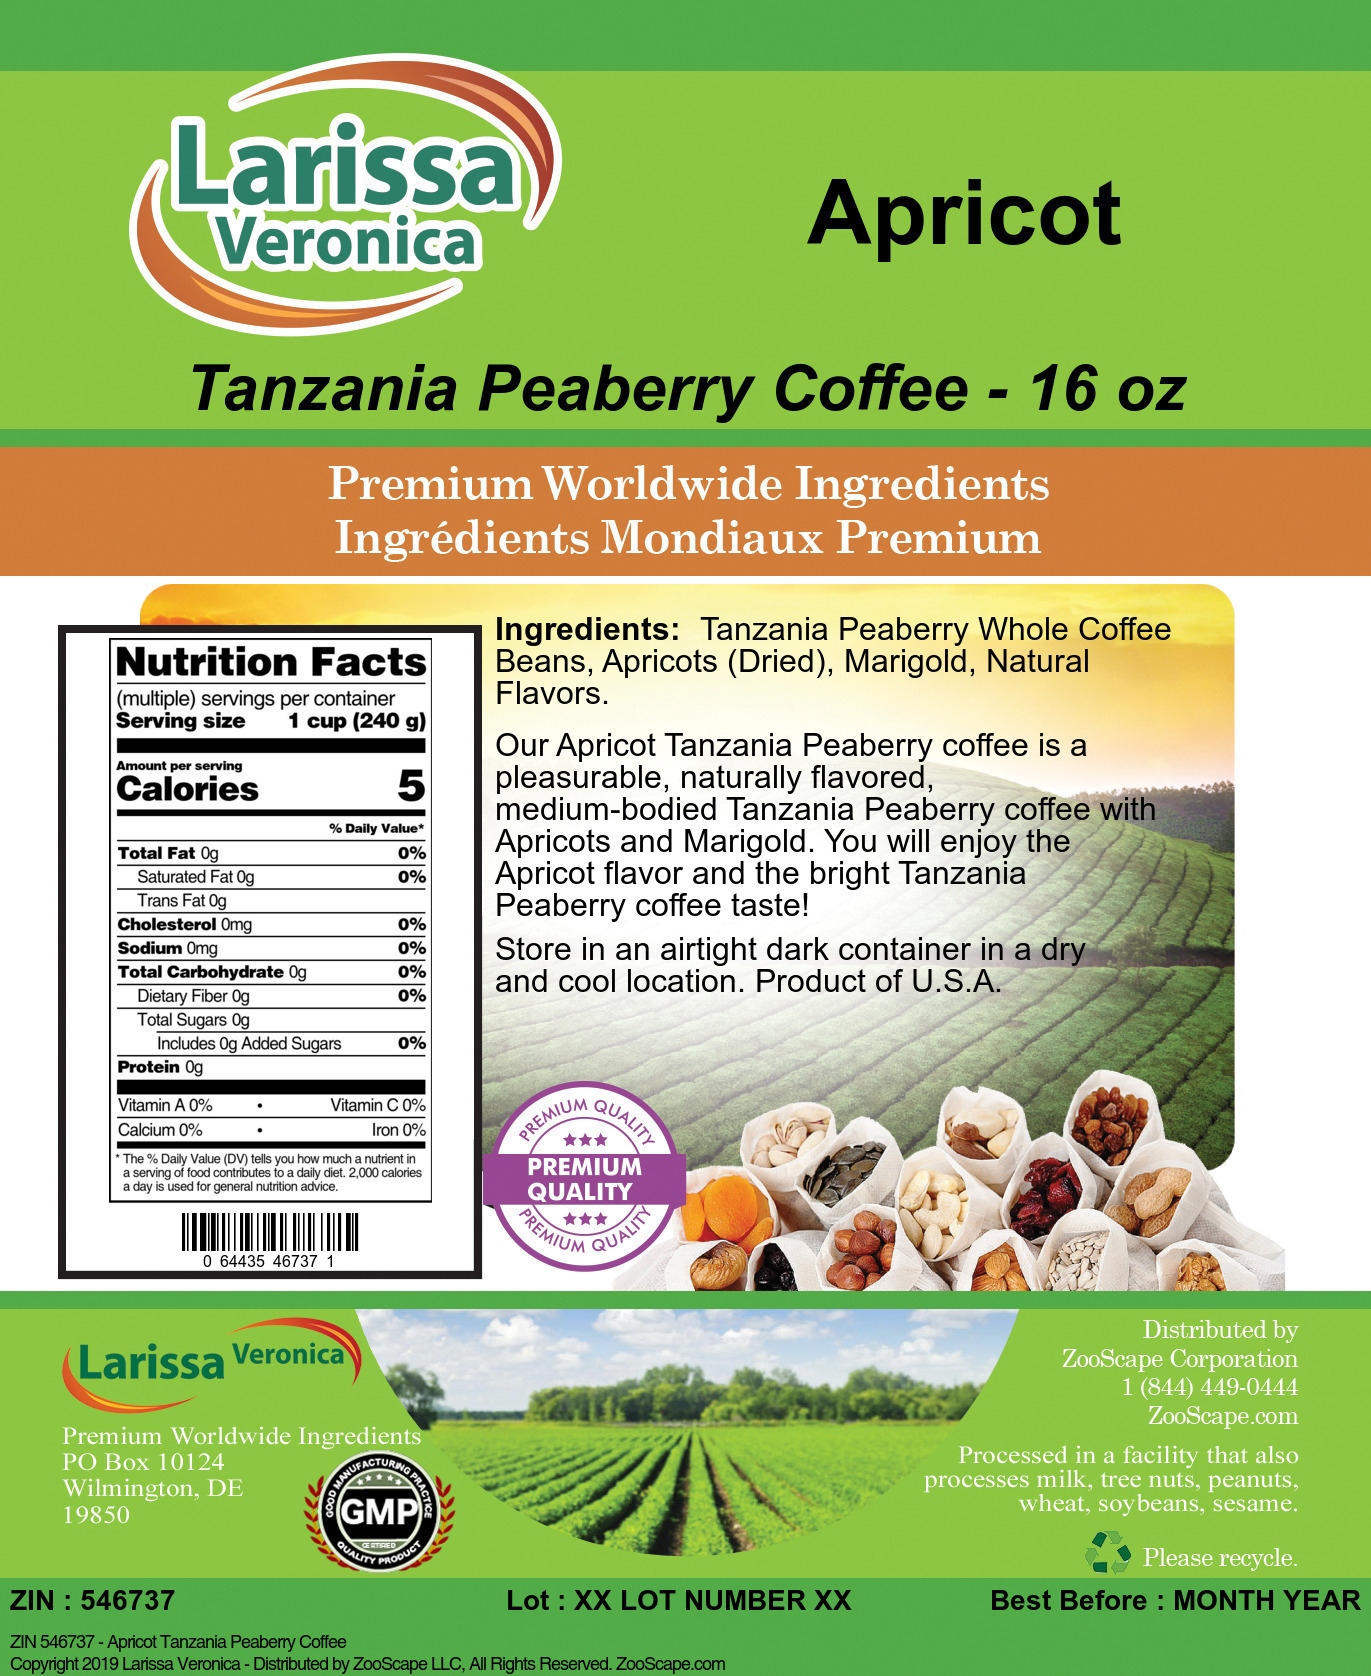 Apricot Tanzania Peaberry Coffee - Label